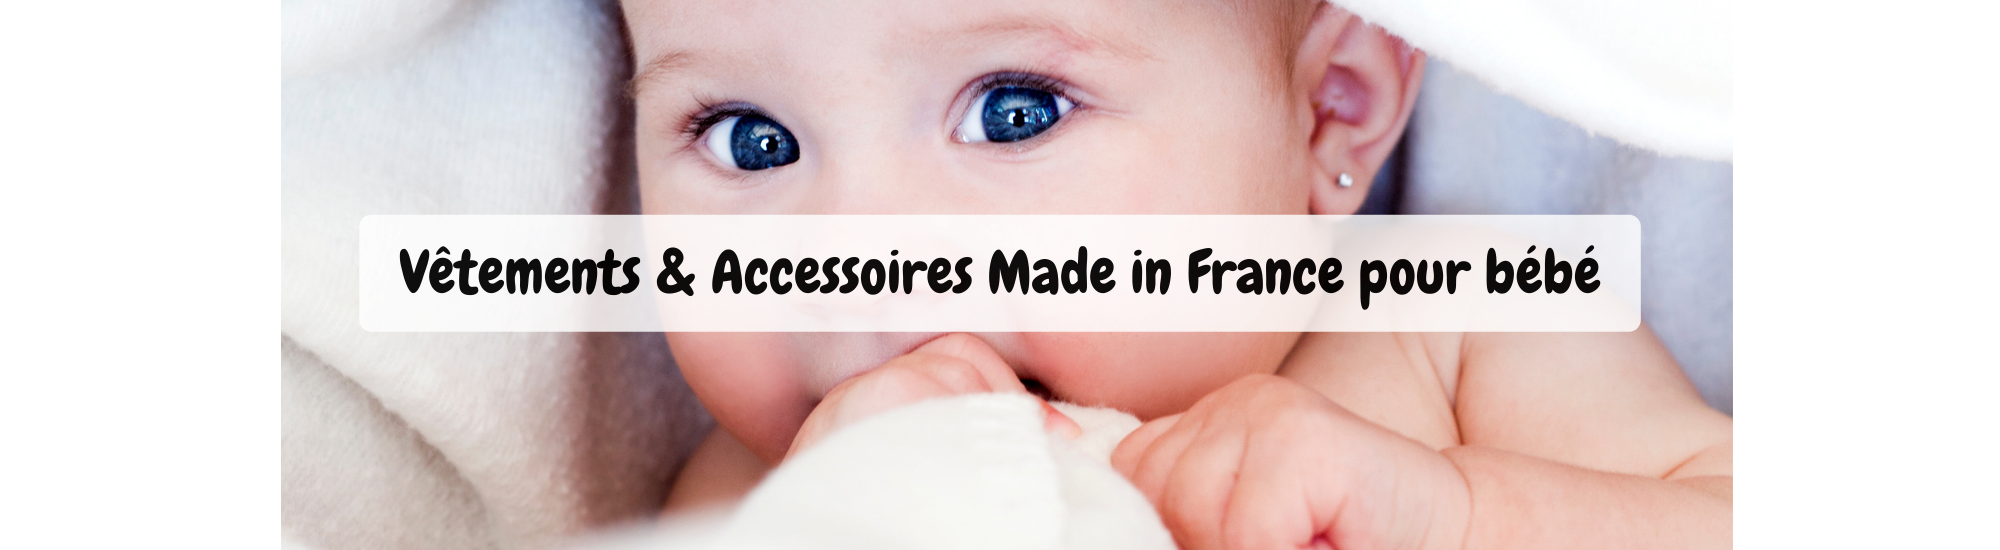 Mininou - vêtements et accessoires éco-responsables fabriqués en France pour bébé 